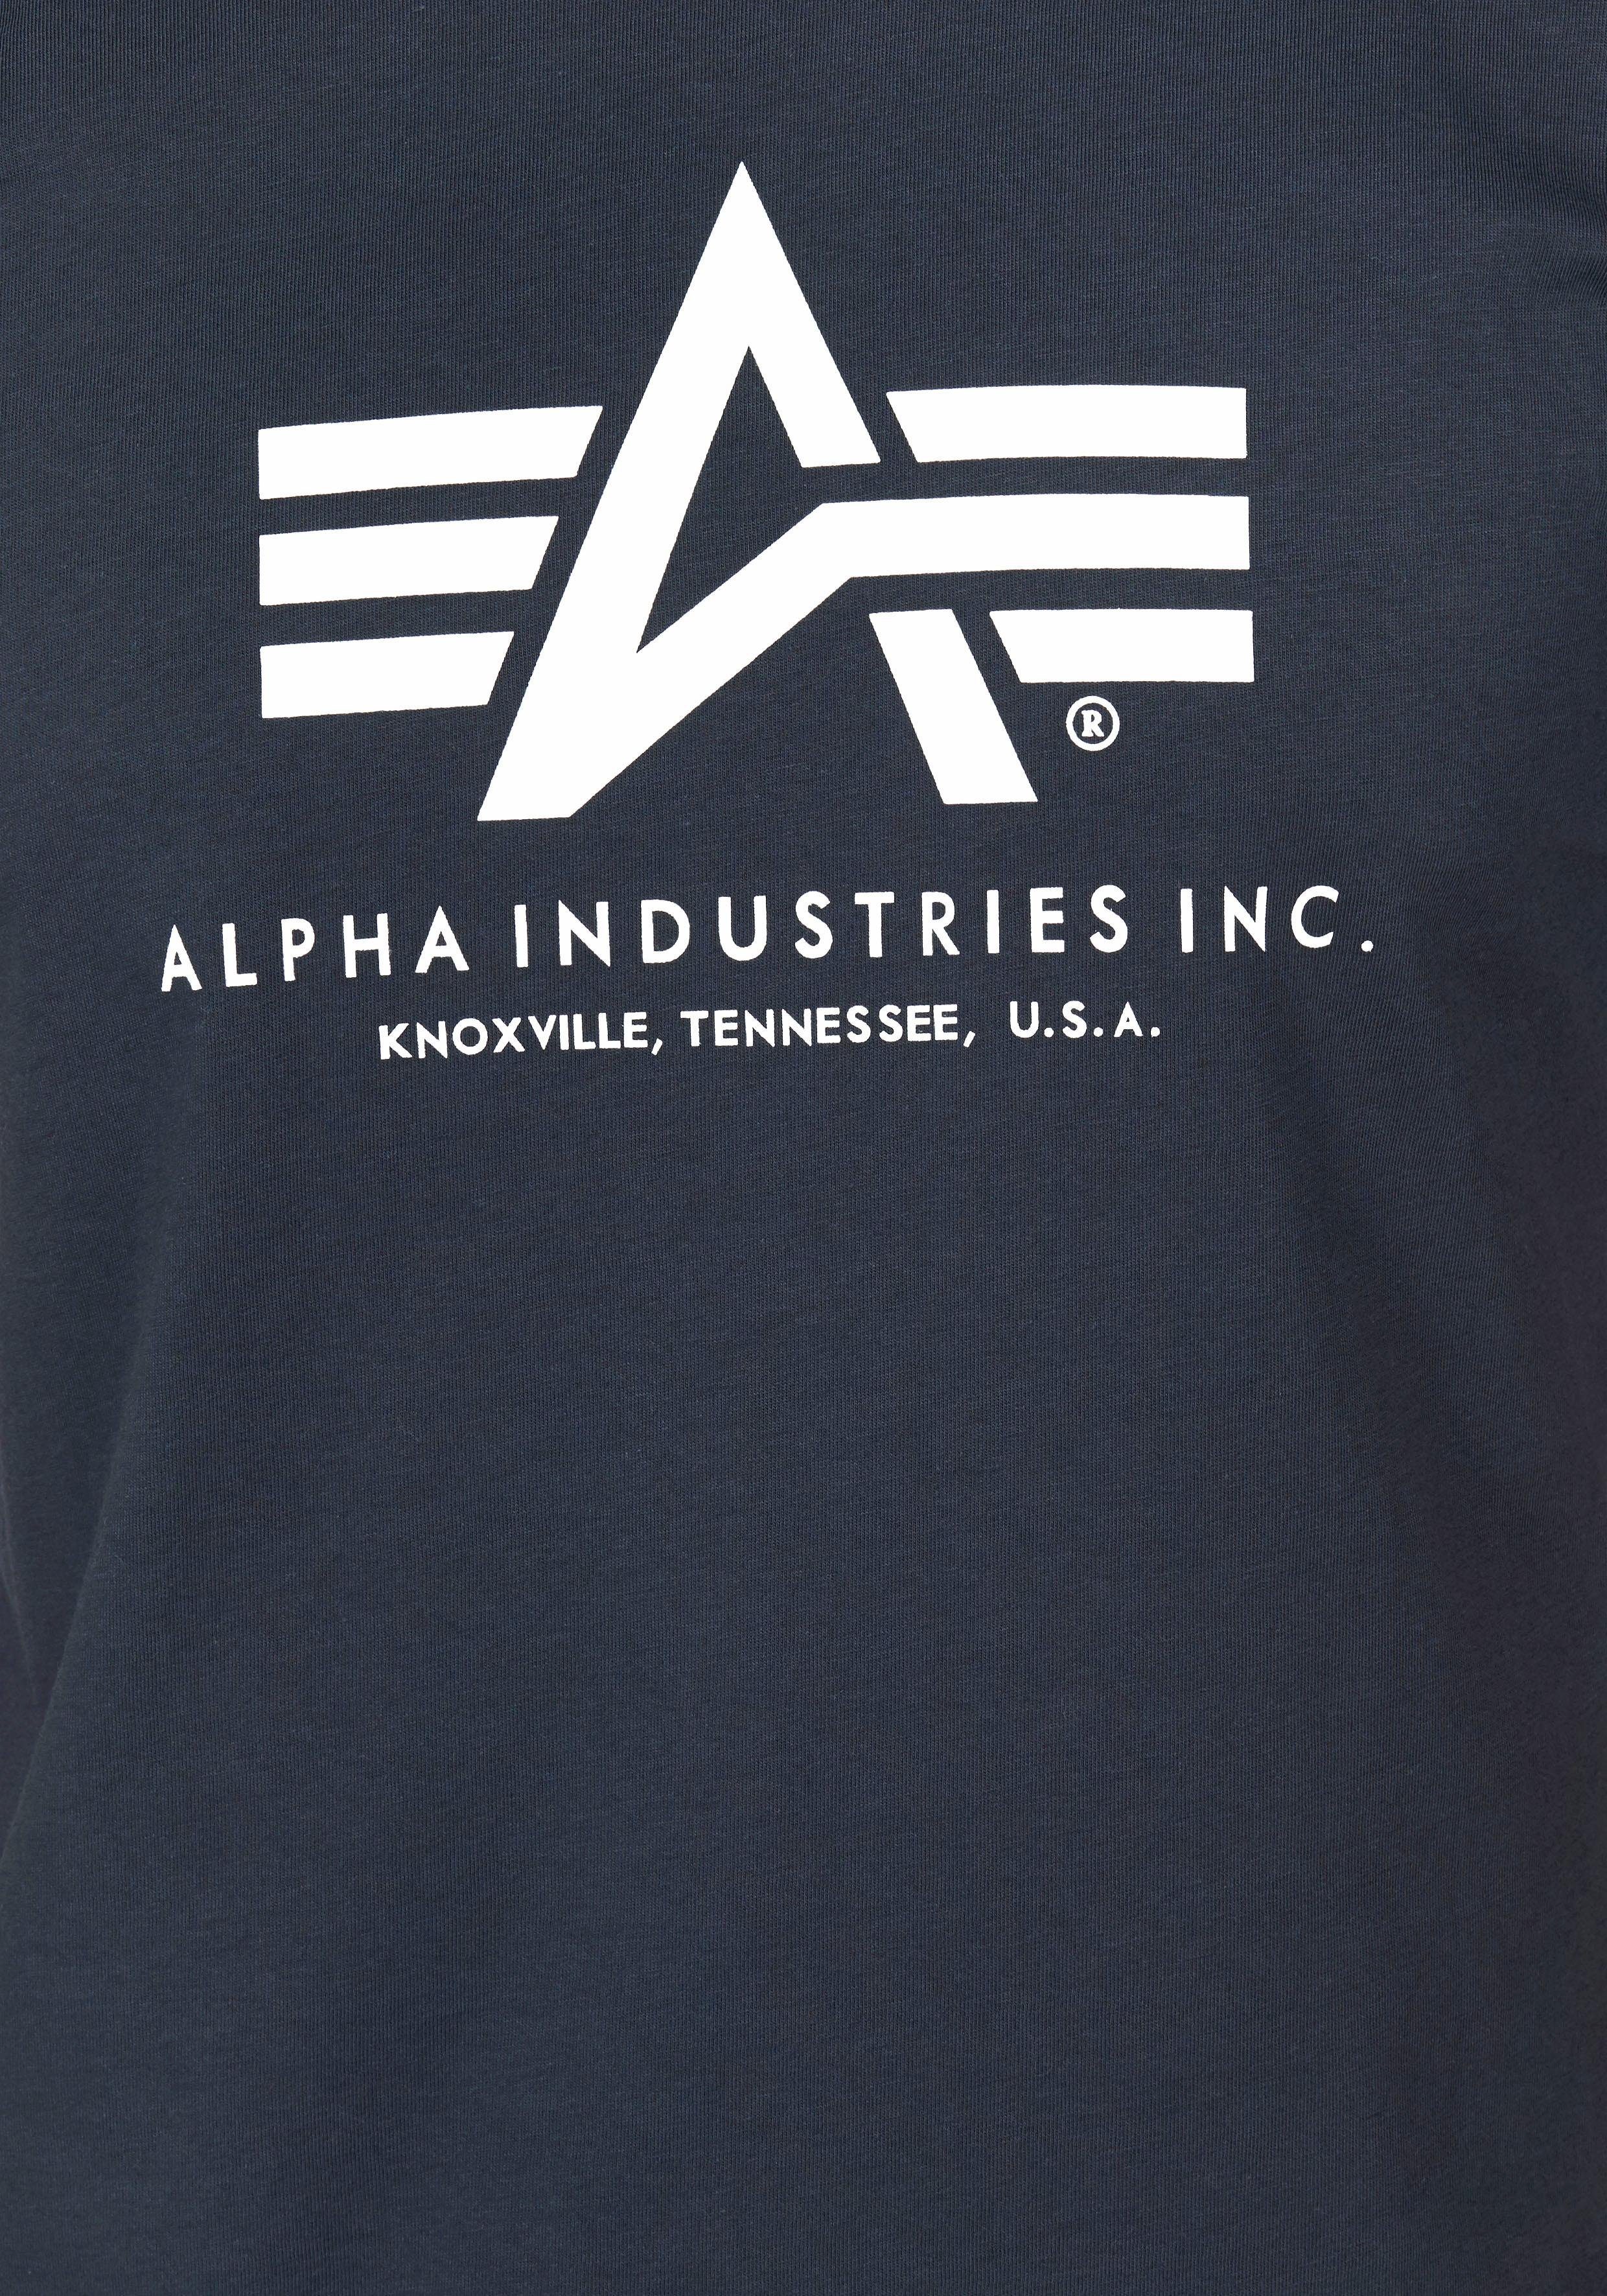 T-Shirt Basic T-Shirt Industries Alpha navy02